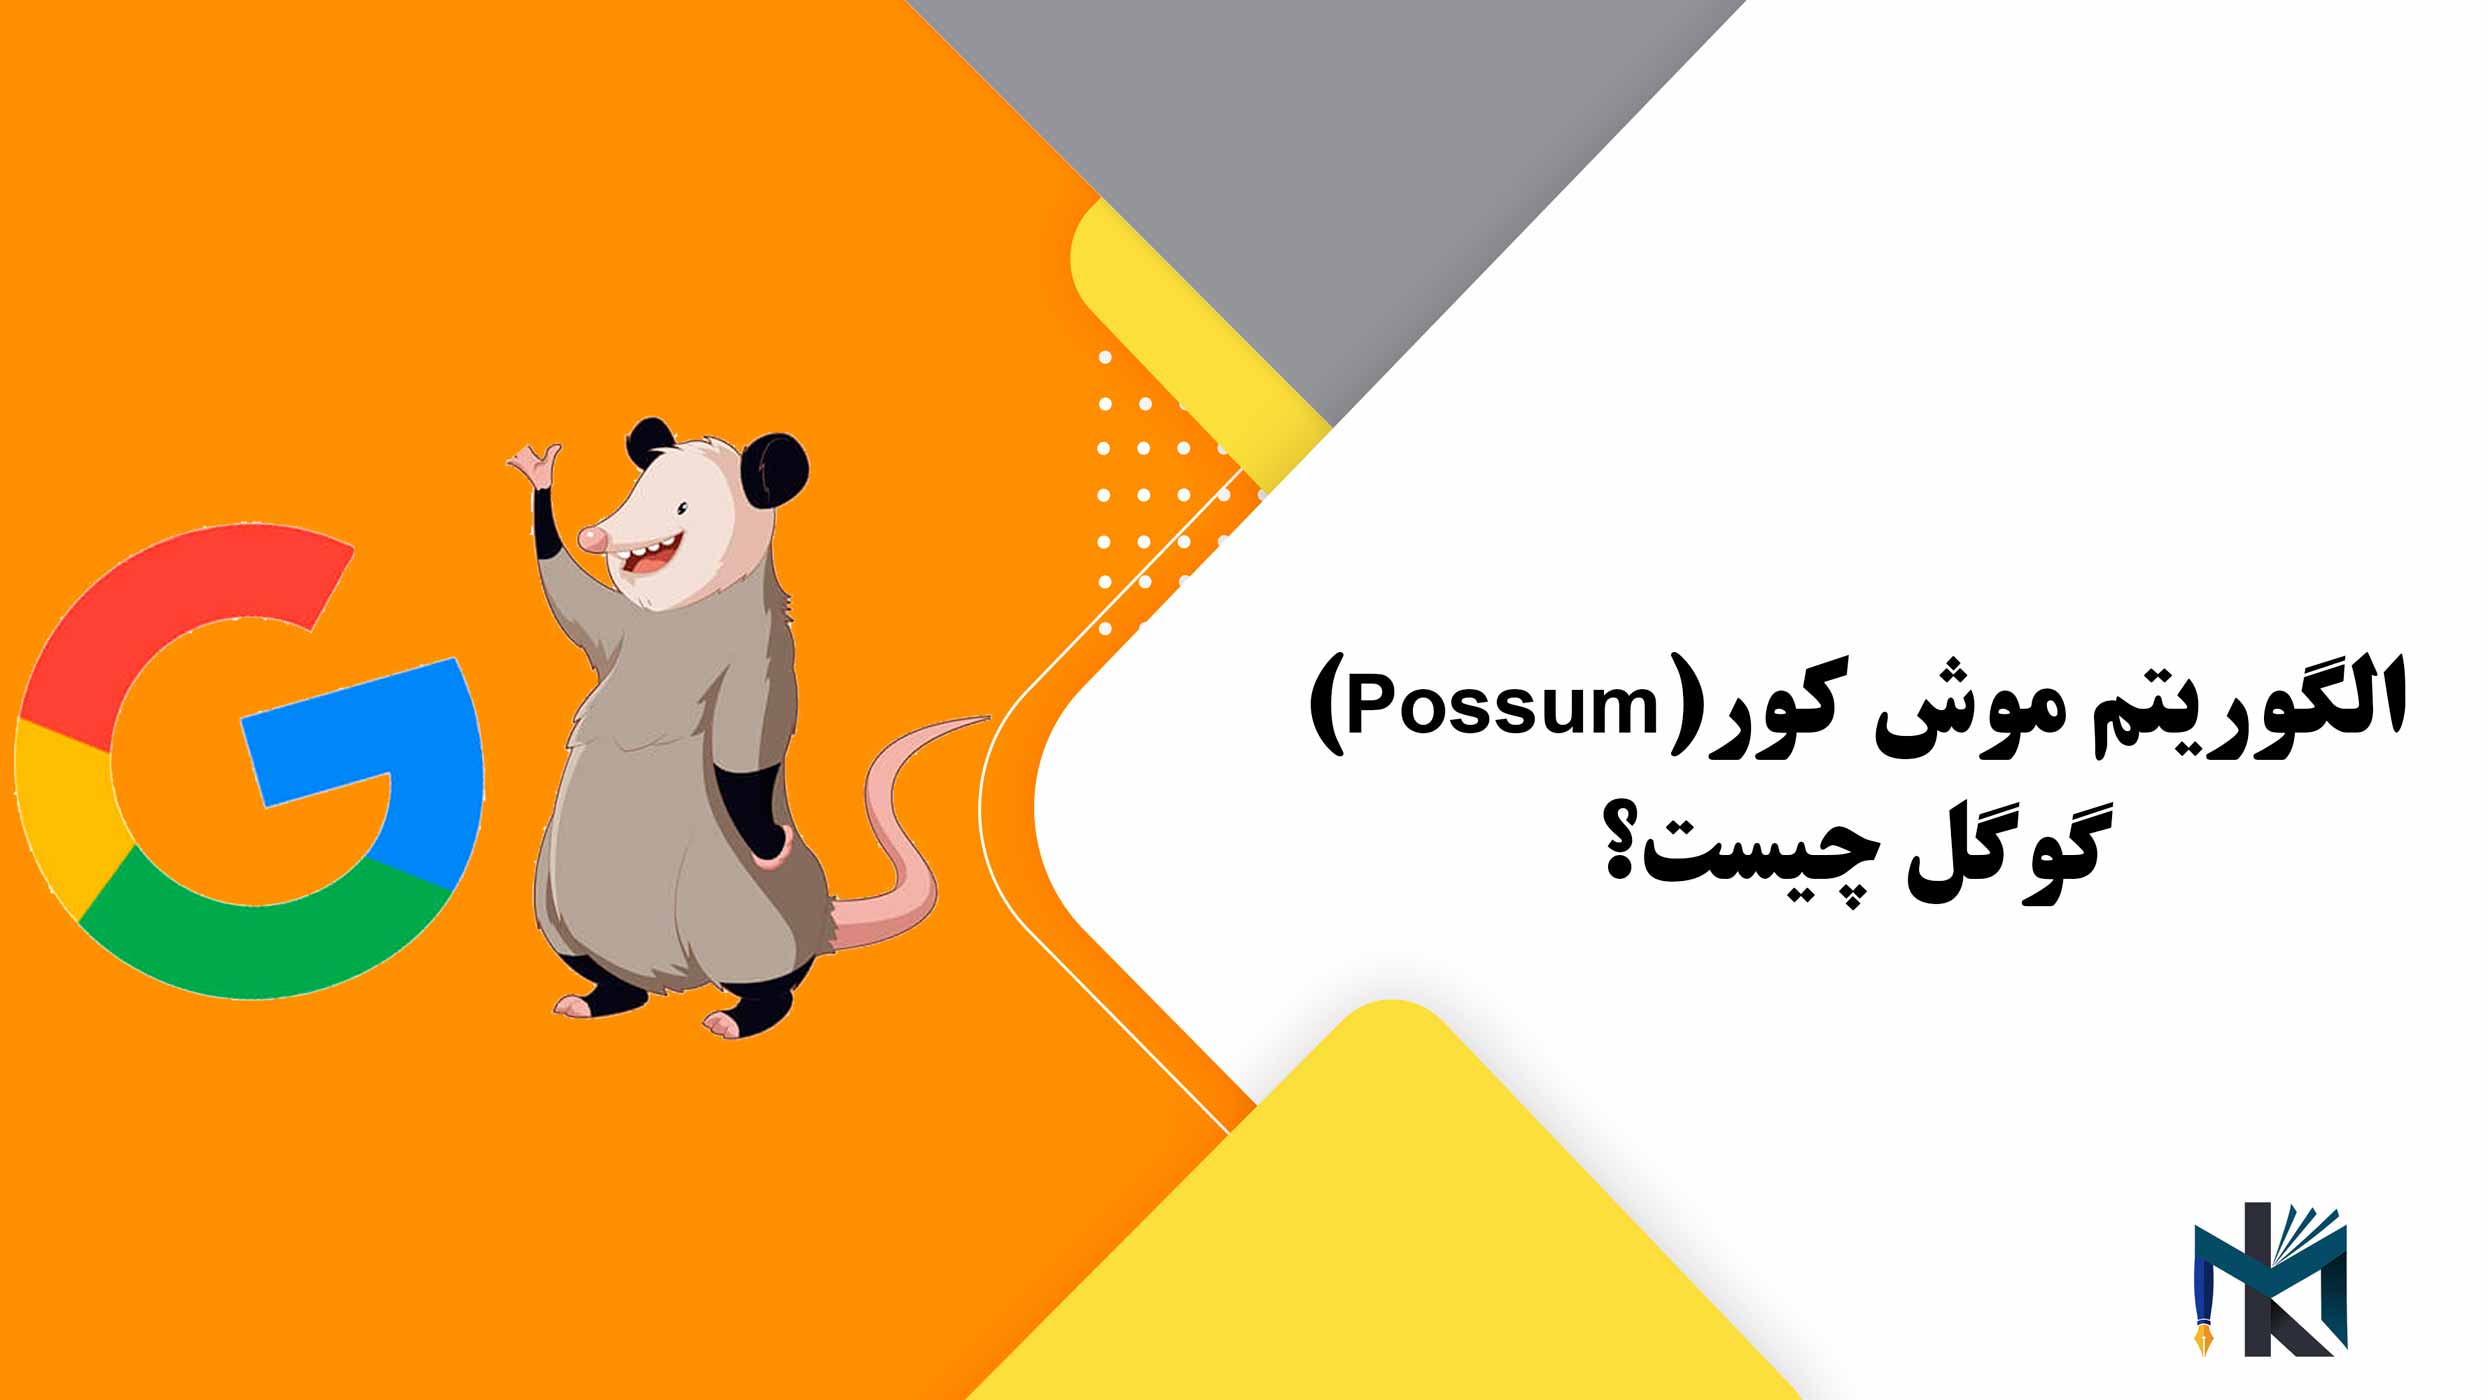 الگوریتم موش کور (Possum) گوگل چیست؟